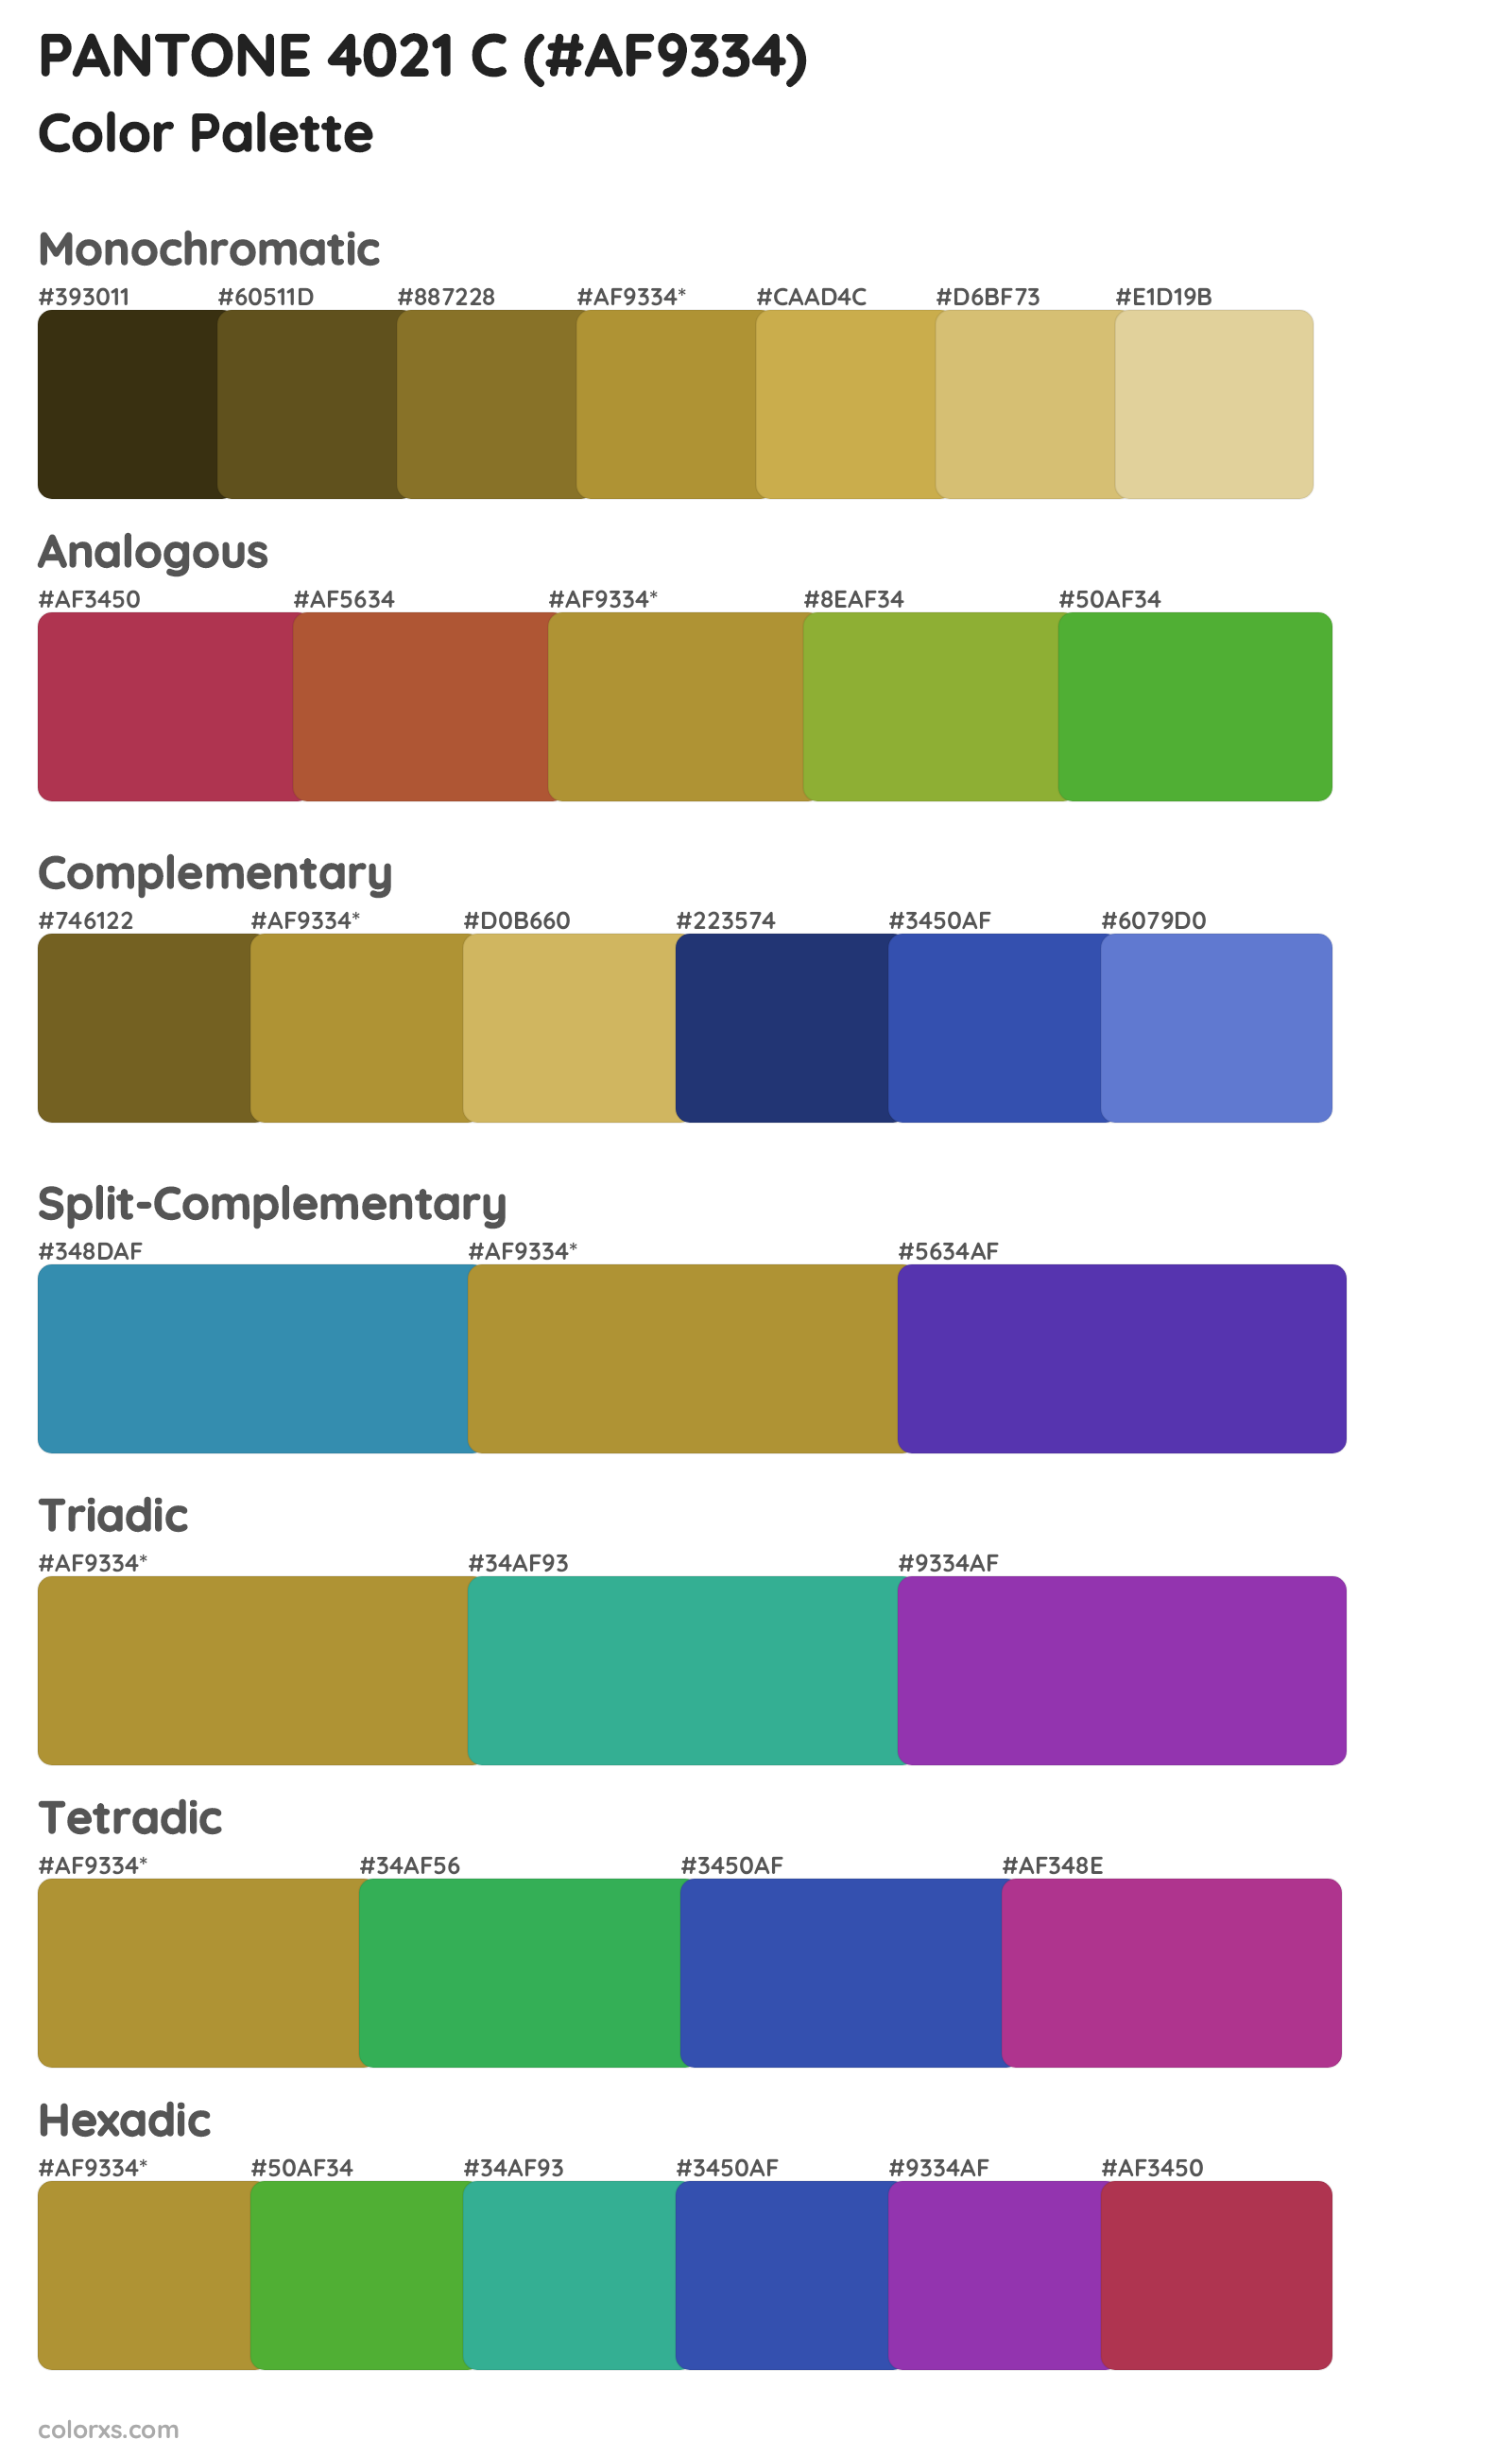 PANTONE 4021 C Color Scheme Palettes